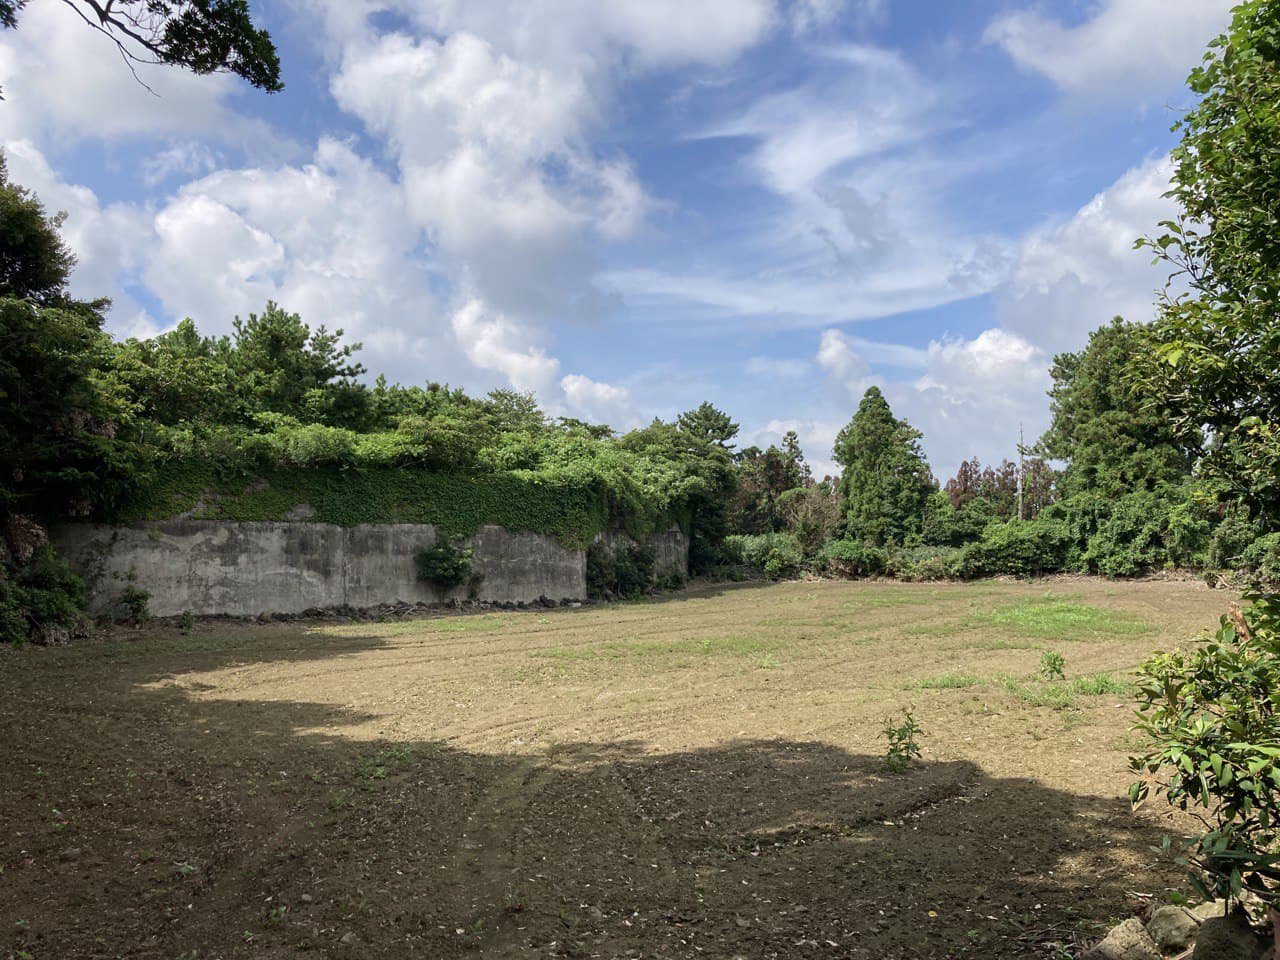 4·3 당시 학살터였던 버들못 근처 밭. 현재는 개인 소유의 농지로 안내판이 세워져 있지 않다.